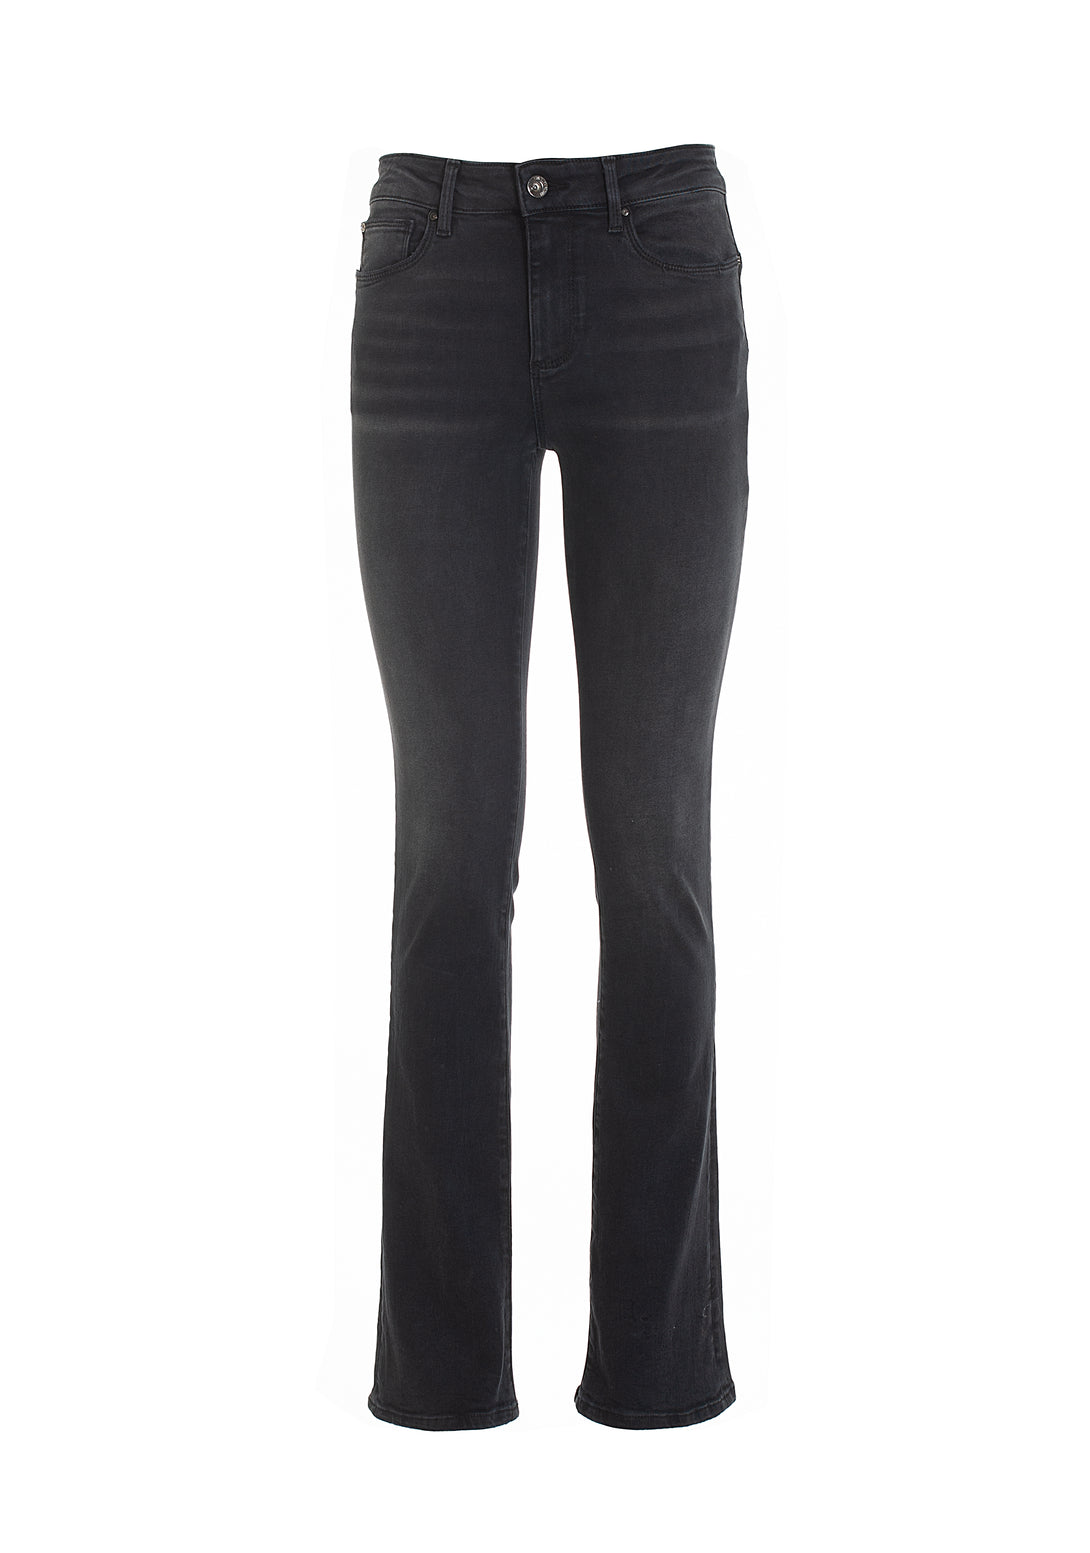 Jeans bootcut effetto shape up in denim nero con lavaggio scuro-FRACOMINA-FP22WV8026D40101-053-JN-24